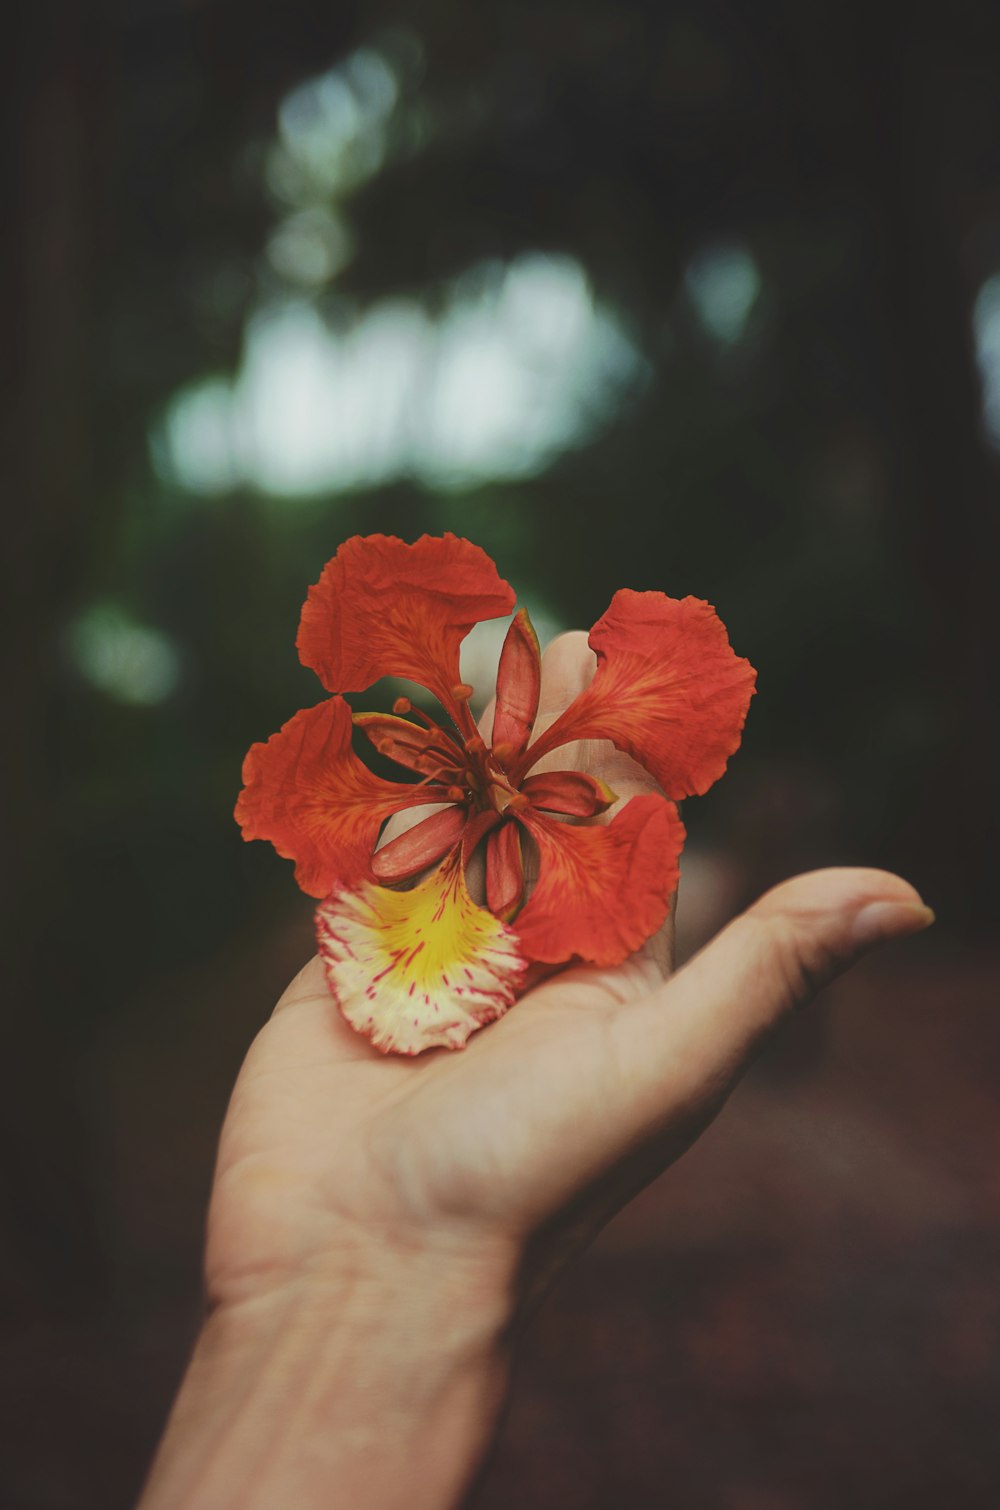 Photographie sélective de la personne tenant une fleur à pétales rouges